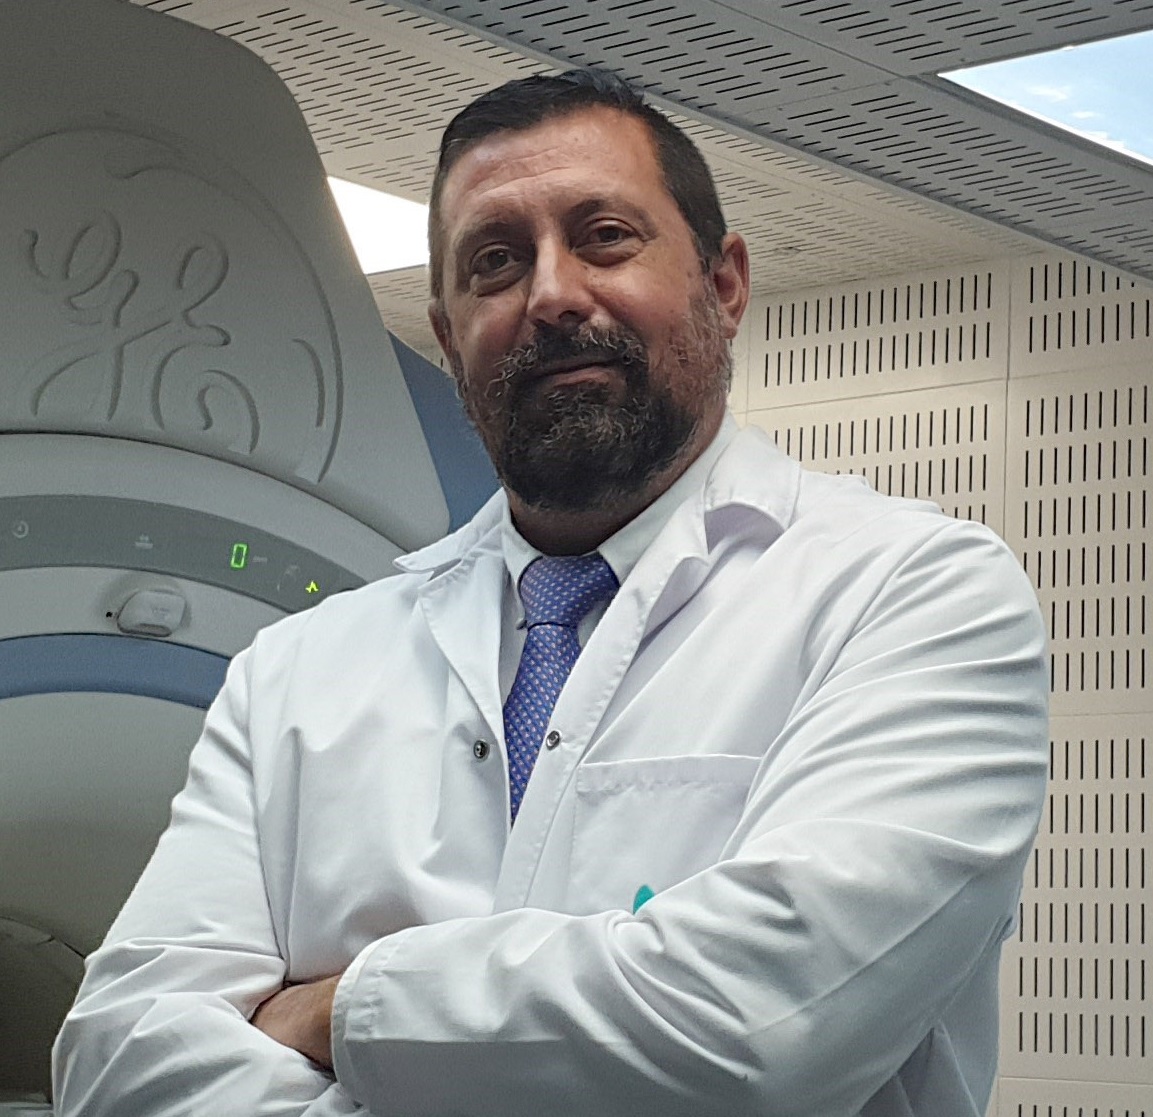 DR. DE LA CHICA CARDIOLOGIA QUIRONSALUD MALAGA peq_